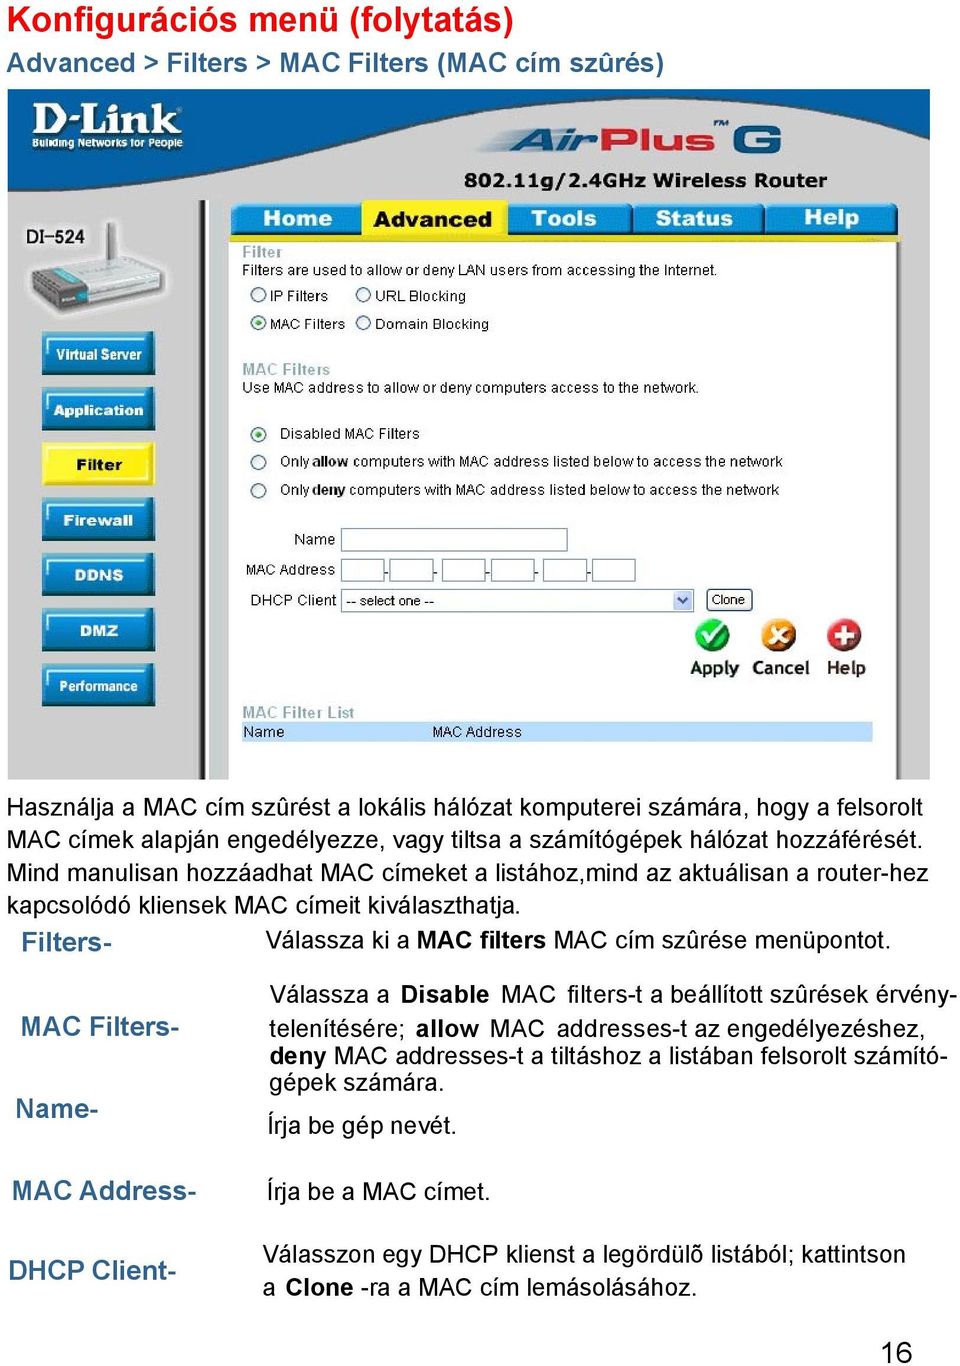 Filters- Válassza ki a MAC filters MAC cím szûrése menüpontot.